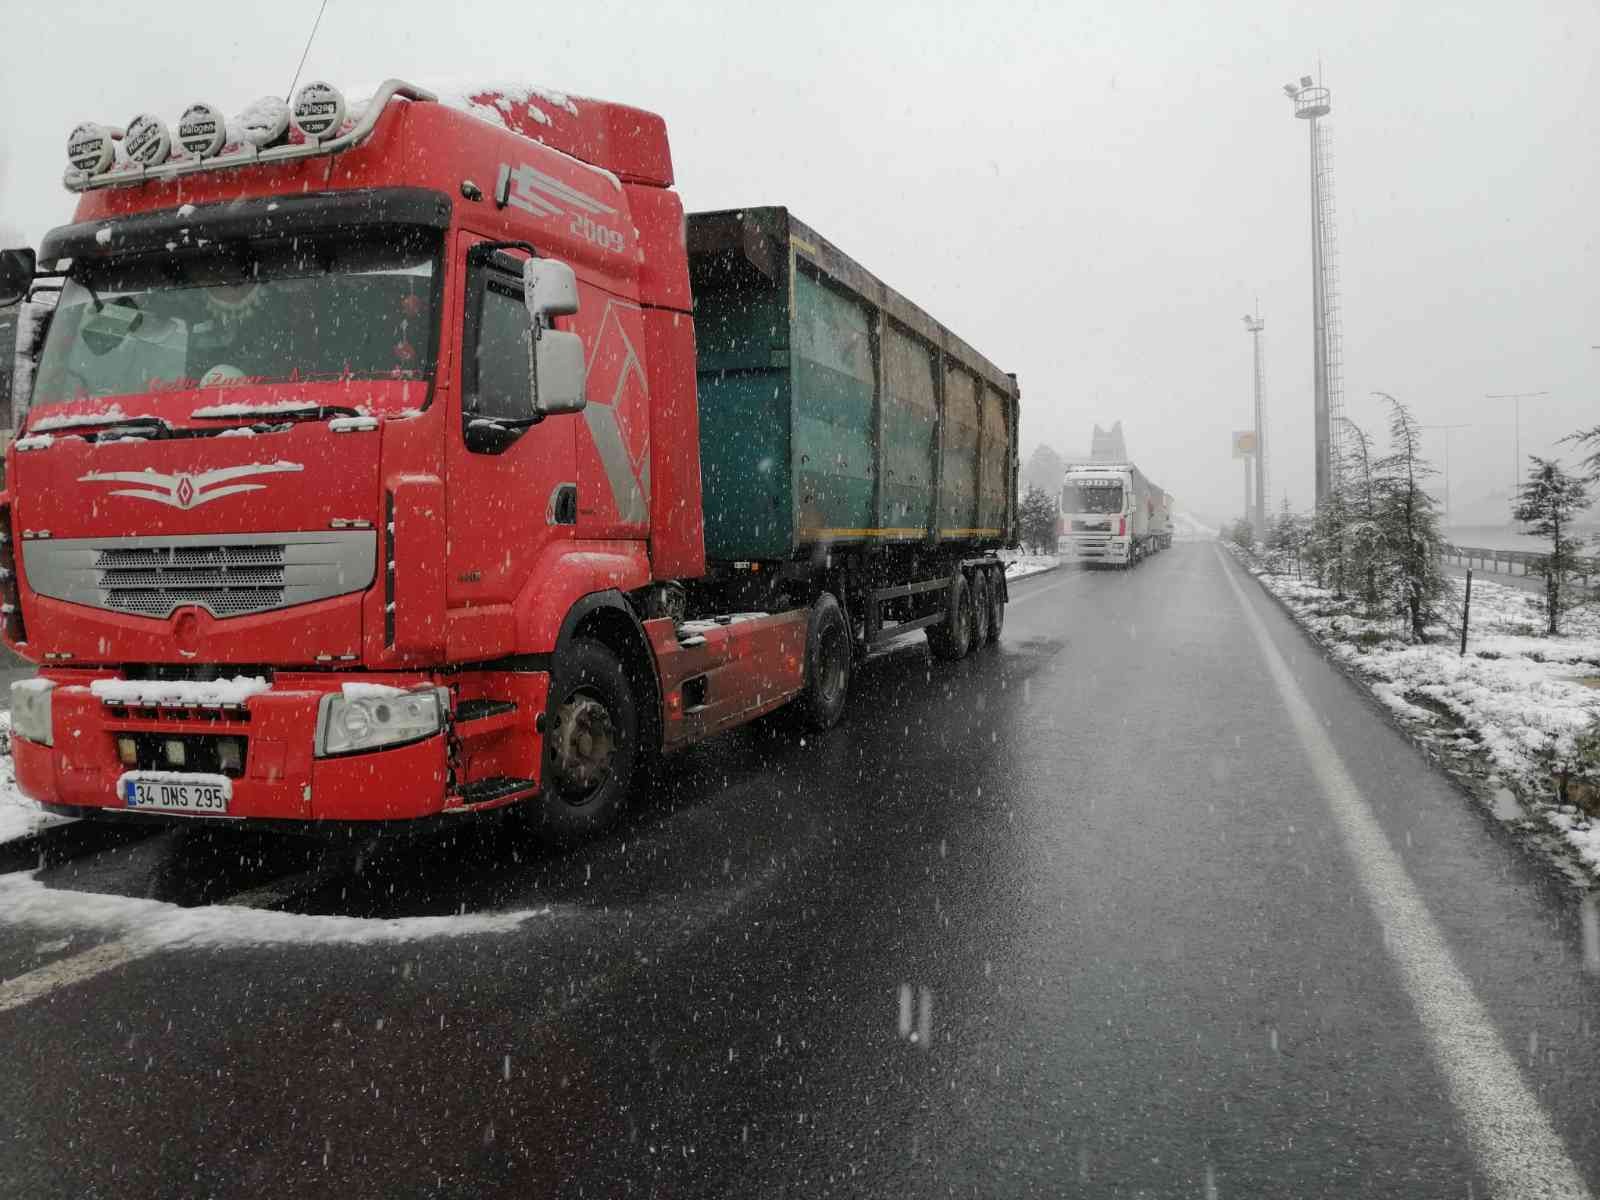 İstanbul’da yoğun kar yağışı nedeniyle şehre girişleri yasaklanan tır ve kamyonların şehre girişine kontrollü şekilde izin verilmeye başlandı ...